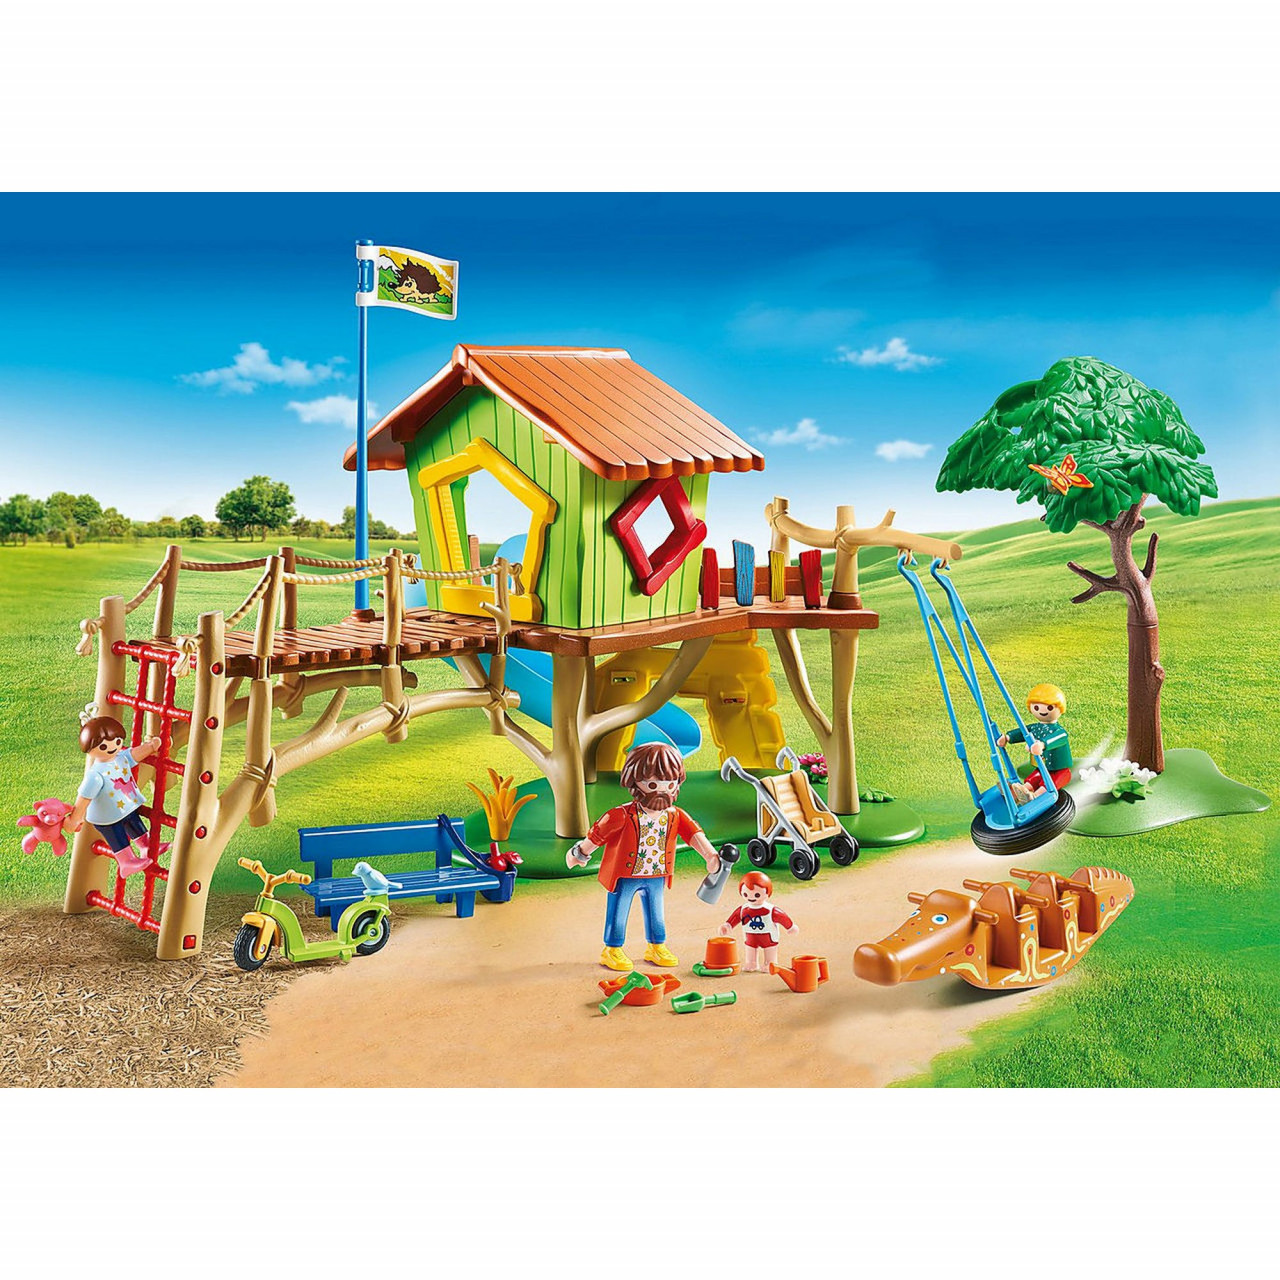 Playmobil – Loc De Joaca In Parcul De Aventuri Jucarii copii